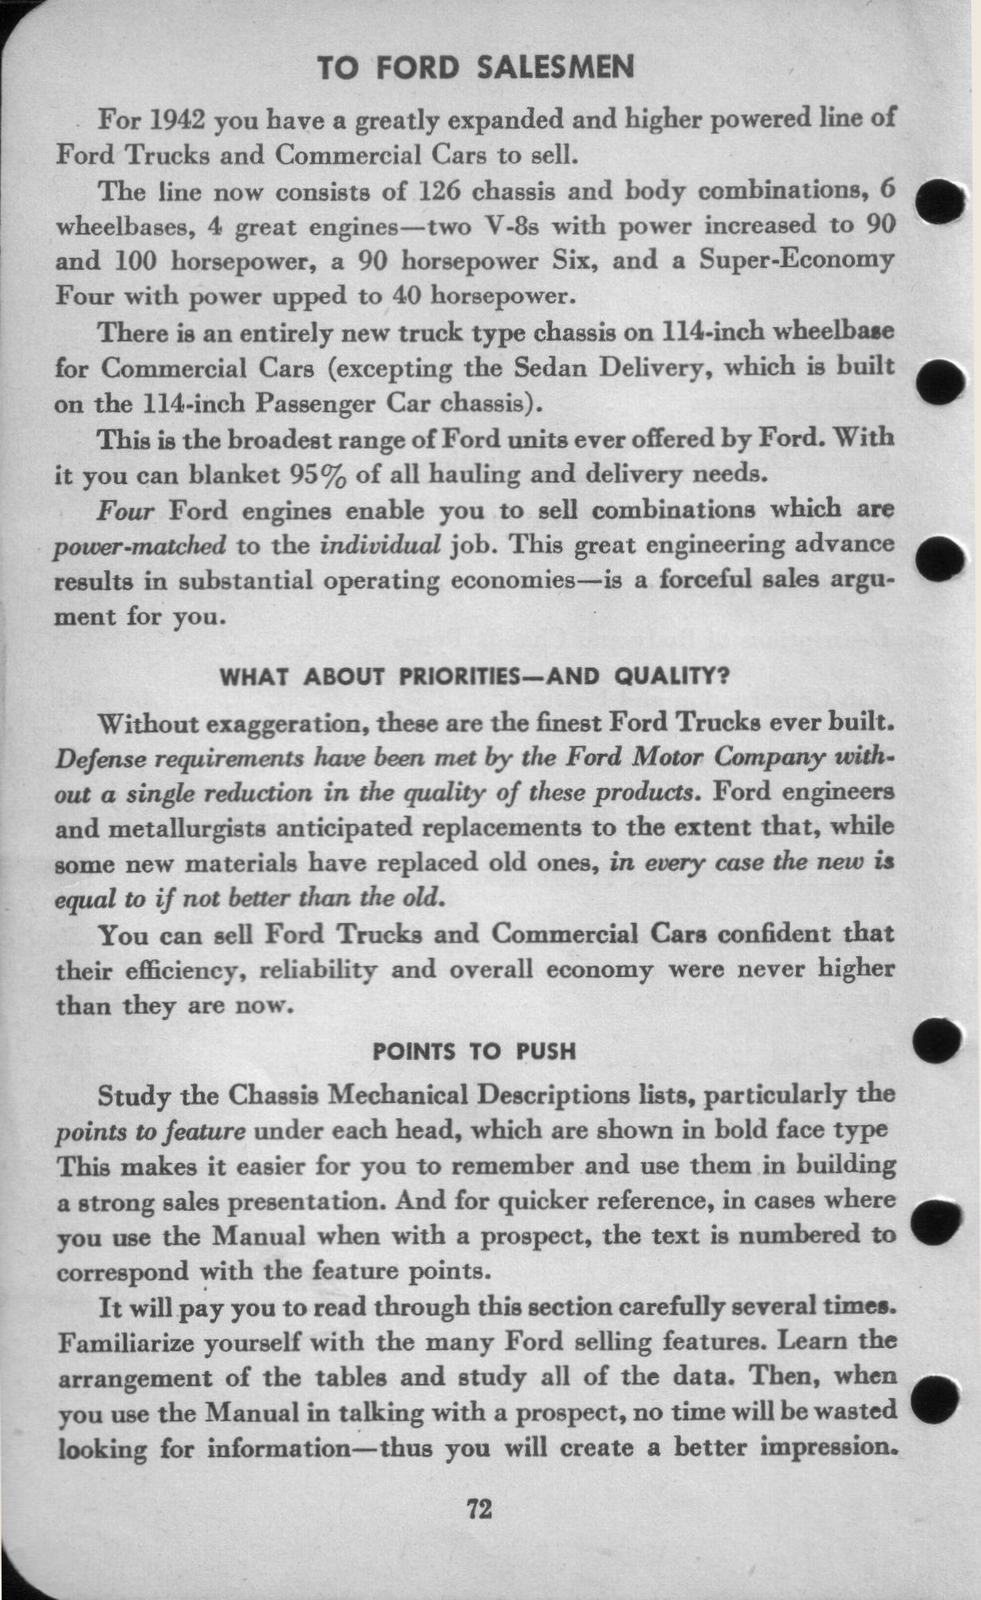 n_1942 Ford Salesmans Reference Manual-072.jpg